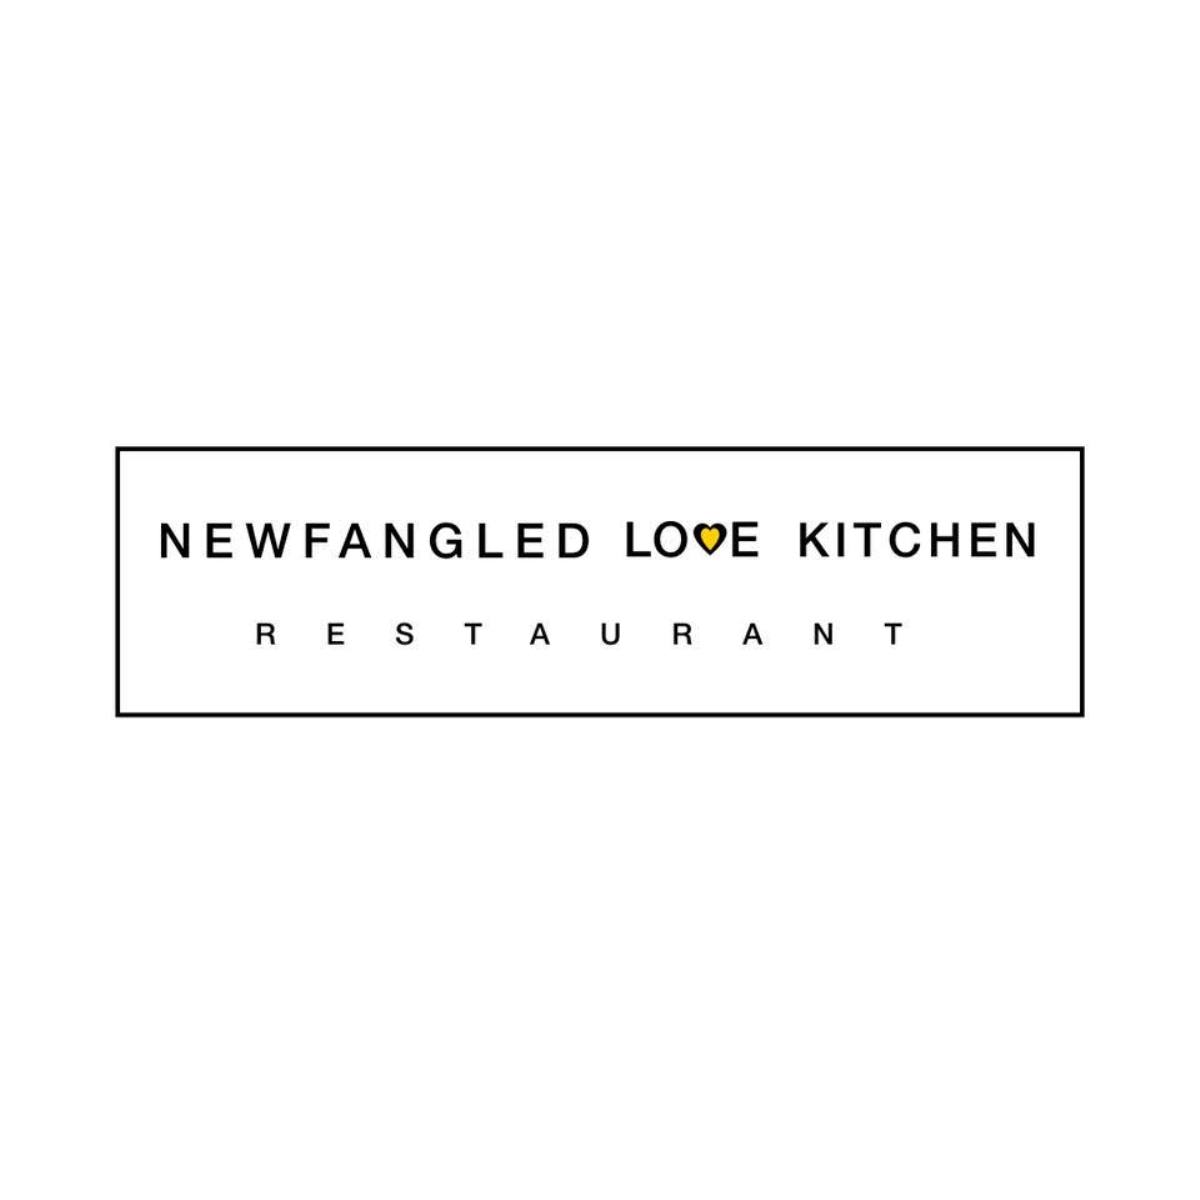 Newfangled Love Kitchen